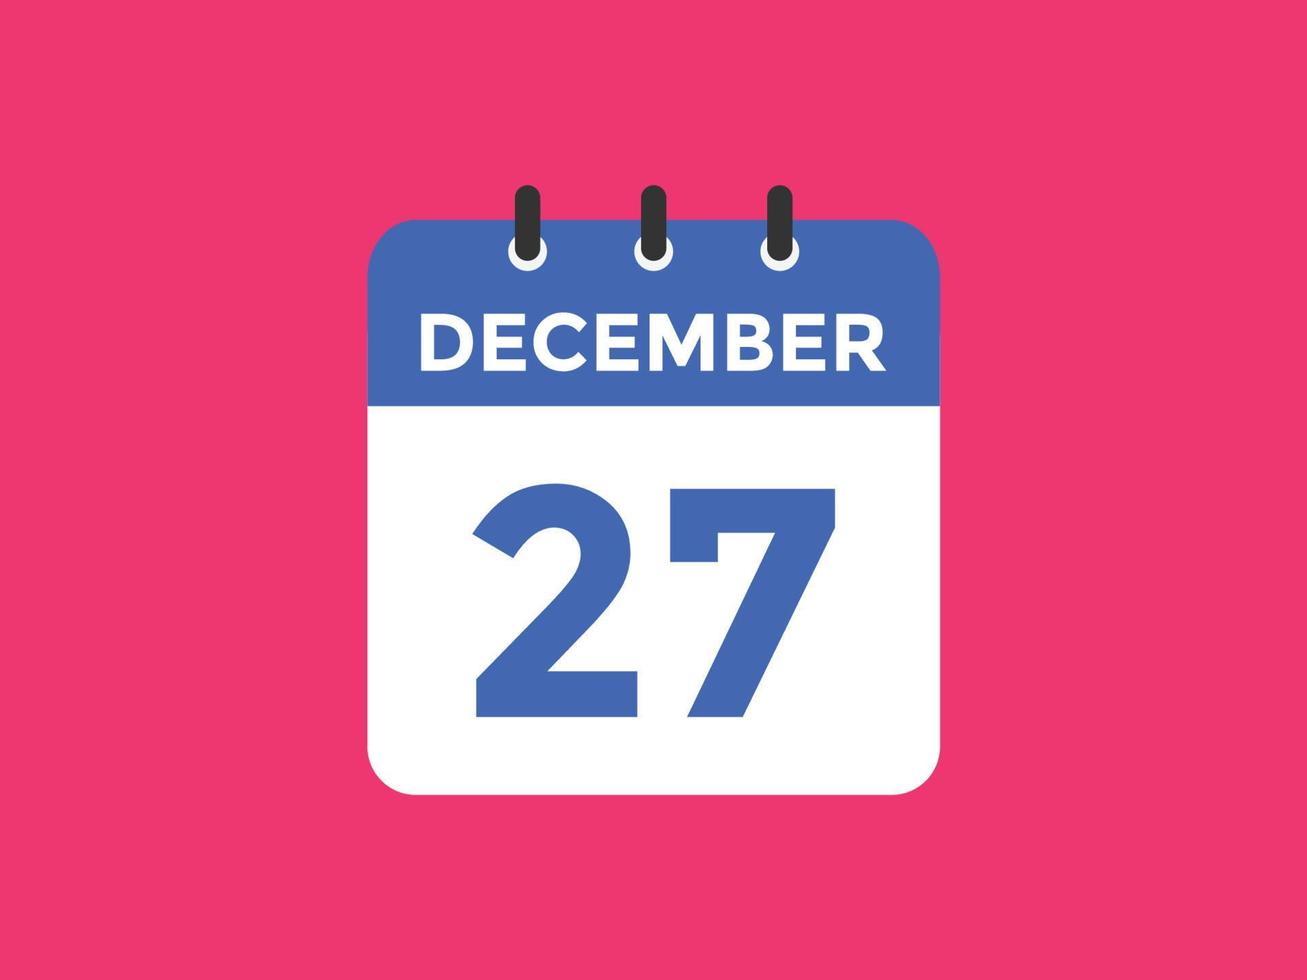 Recordatorio del calendario del 27 de diciembre. Plantilla de icono de calendario diario del 27 de diciembre. plantilla de diseño de icono de calendario 27 de diciembre. ilustración vectorial vector